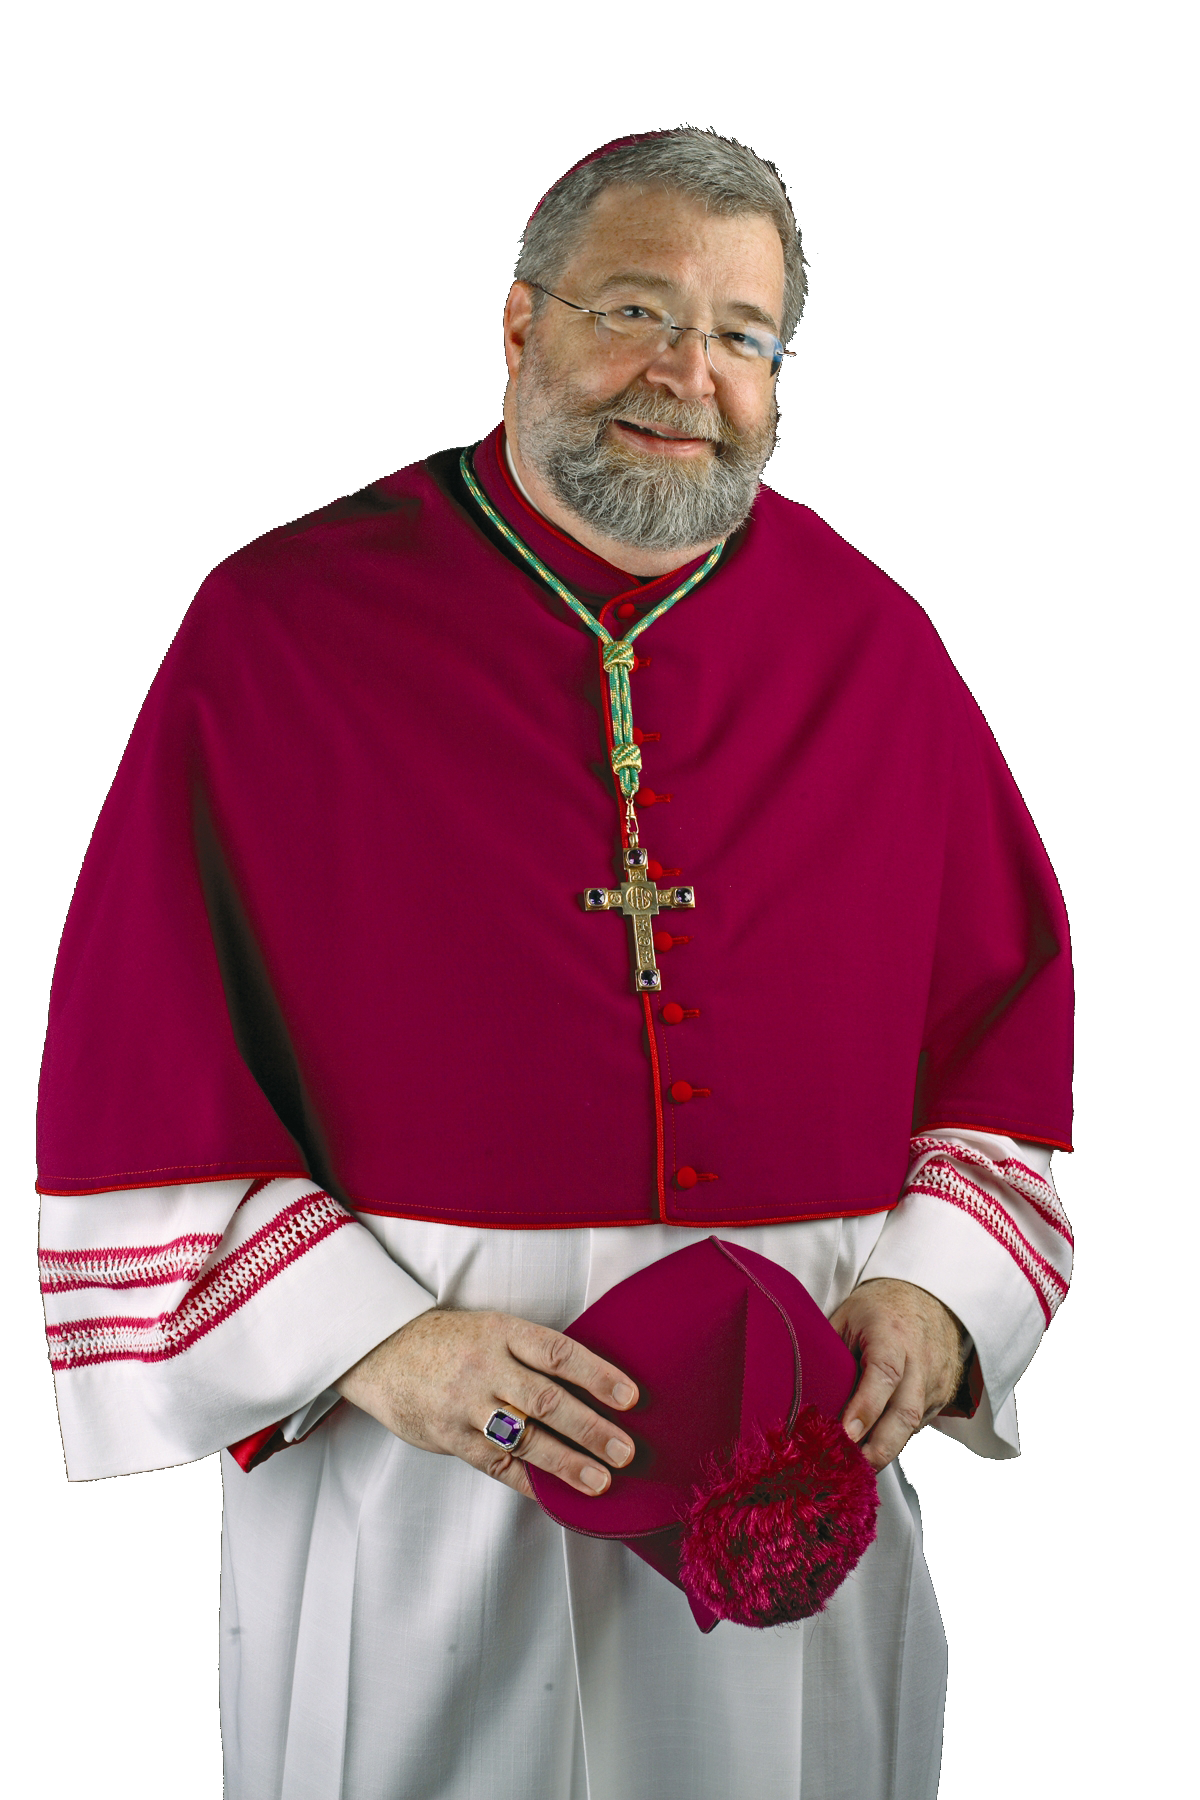 Bishop Jenky formal 07 300 dpi